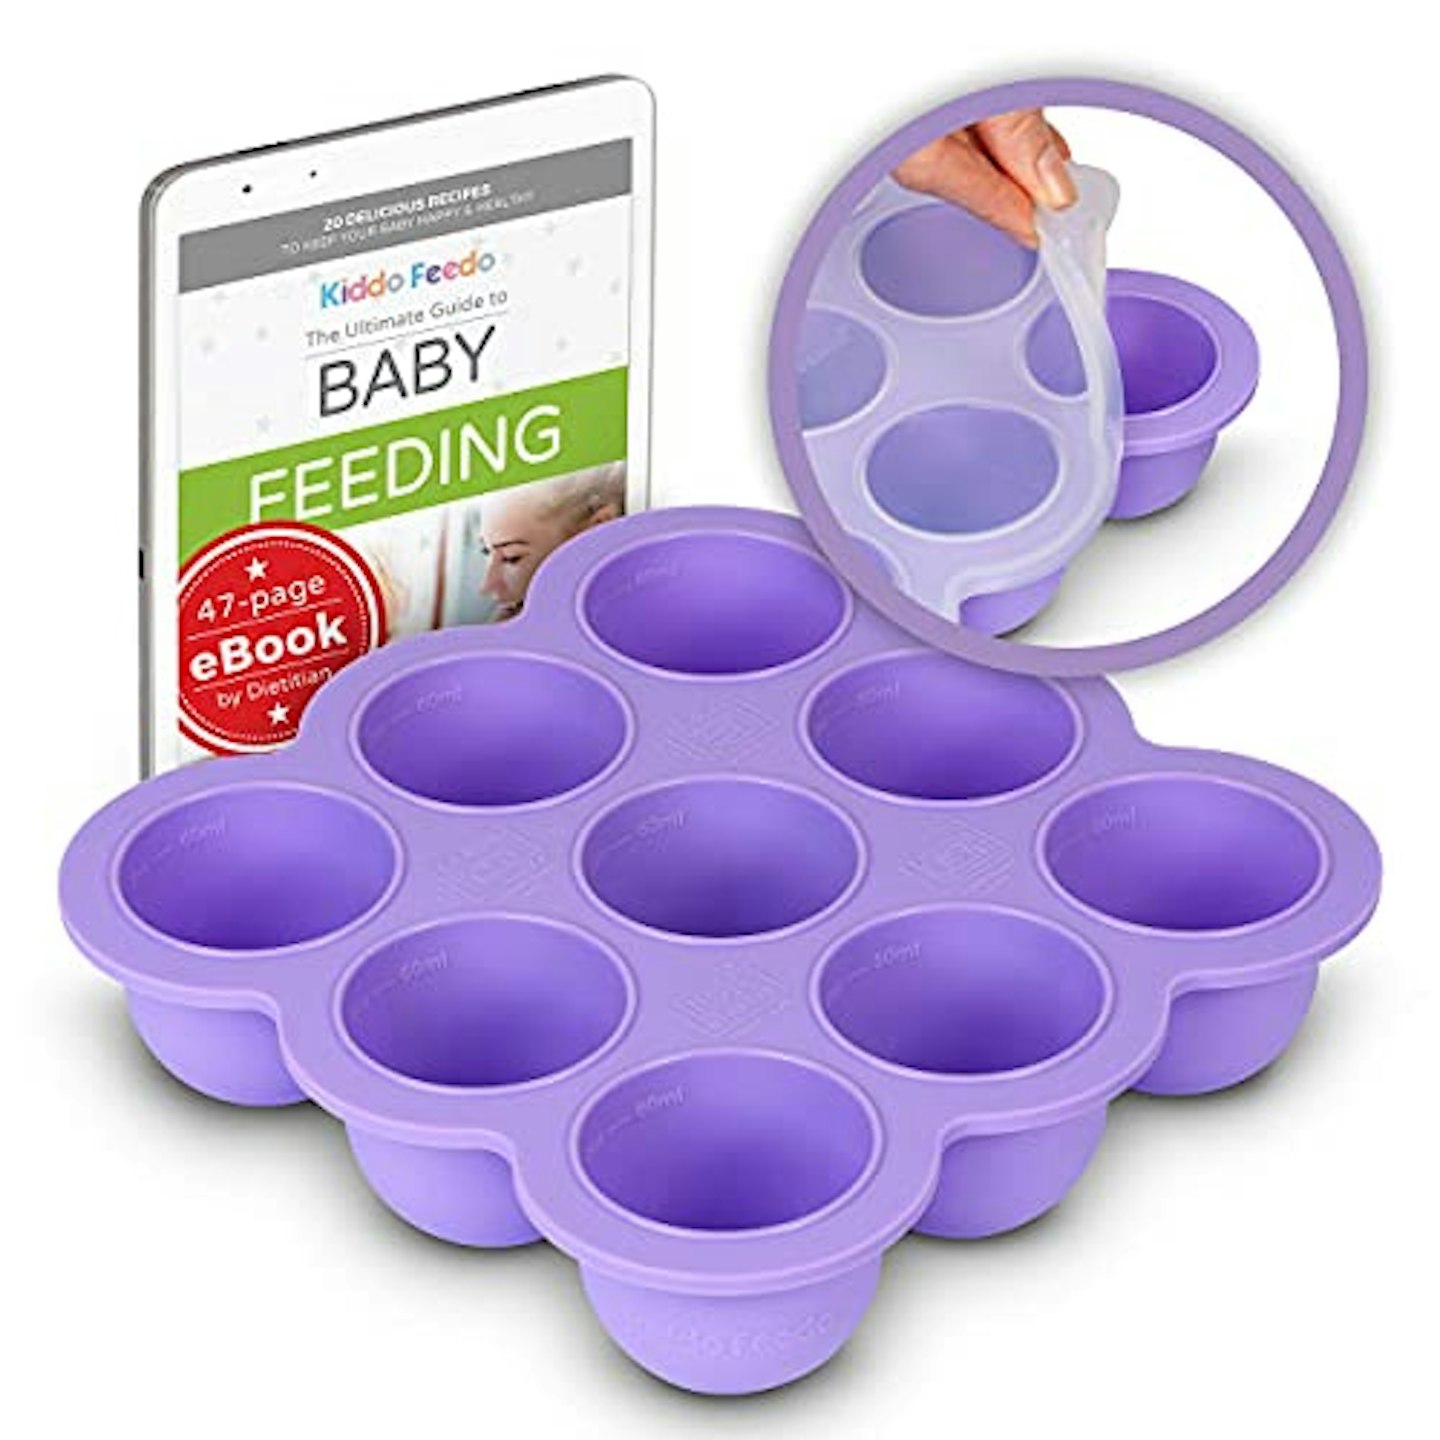 Baby food storage - Best baby food storage essentials